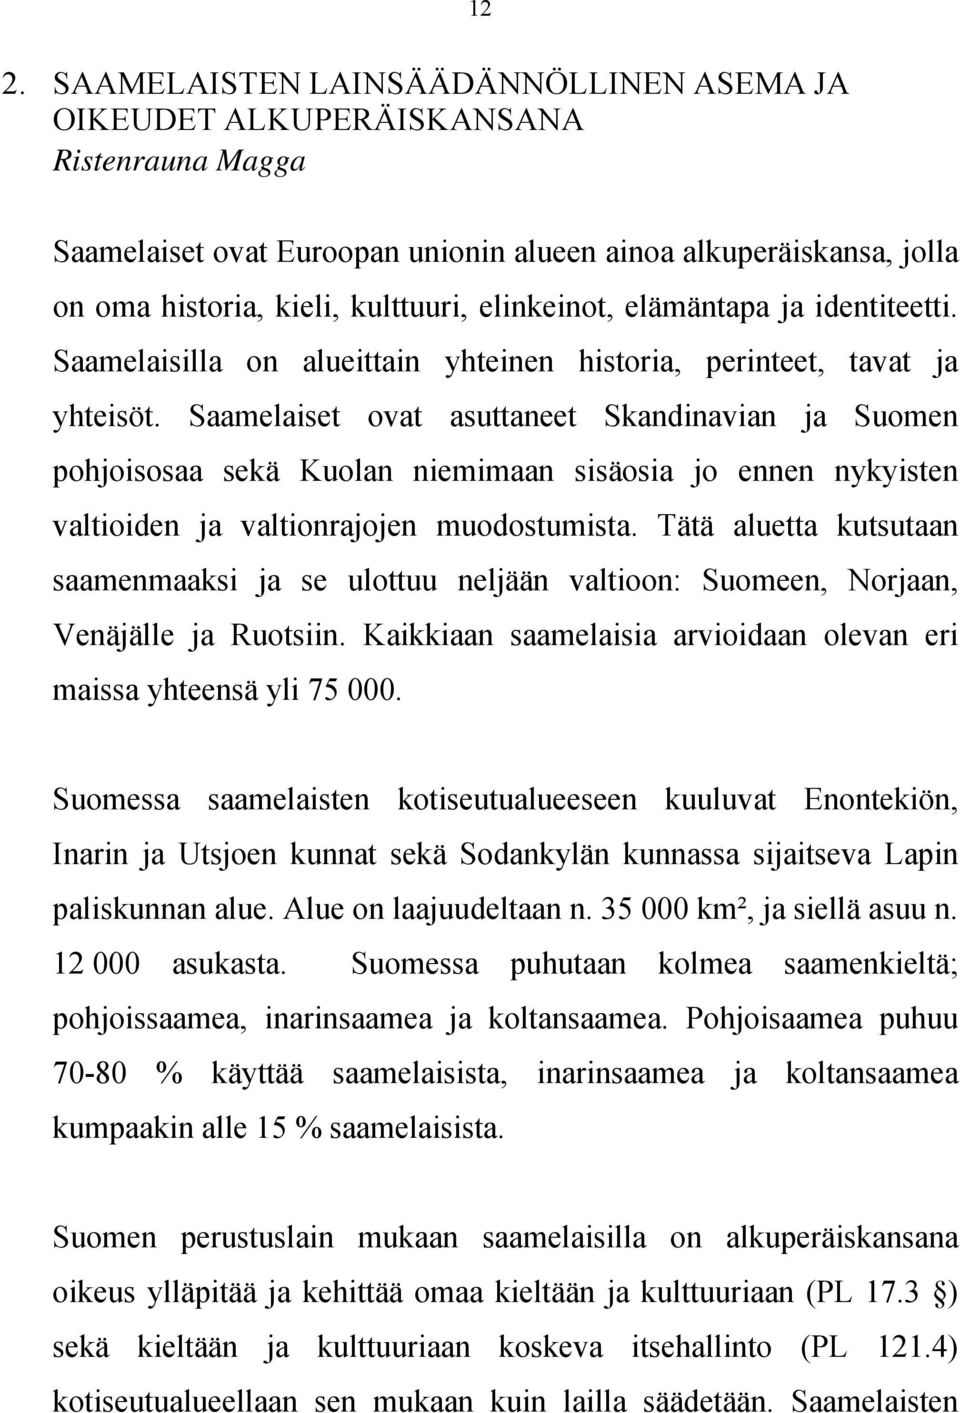 Saamelaiset ovat asuttaneet Skandinavian ja Suomen pohjoisosaa sekä Kuolan niemimaan sisäosia jo ennen nykyisten valtioiden ja valtionrajojen muodostumista.